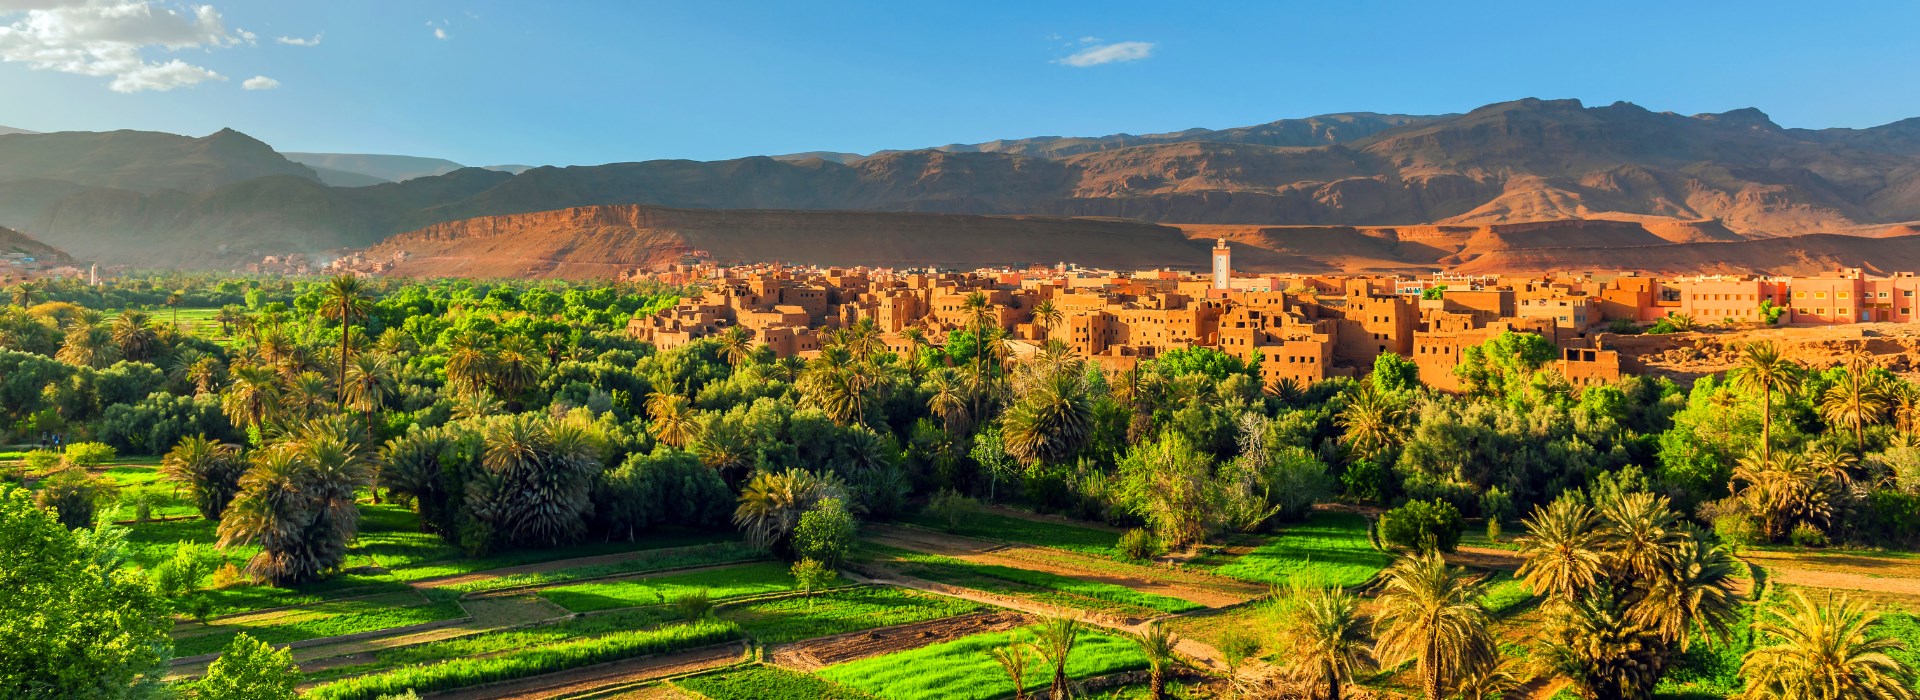 MAROC creer societe maroc creation entreprise maroc domiciliation maroc compte bancaire maroc